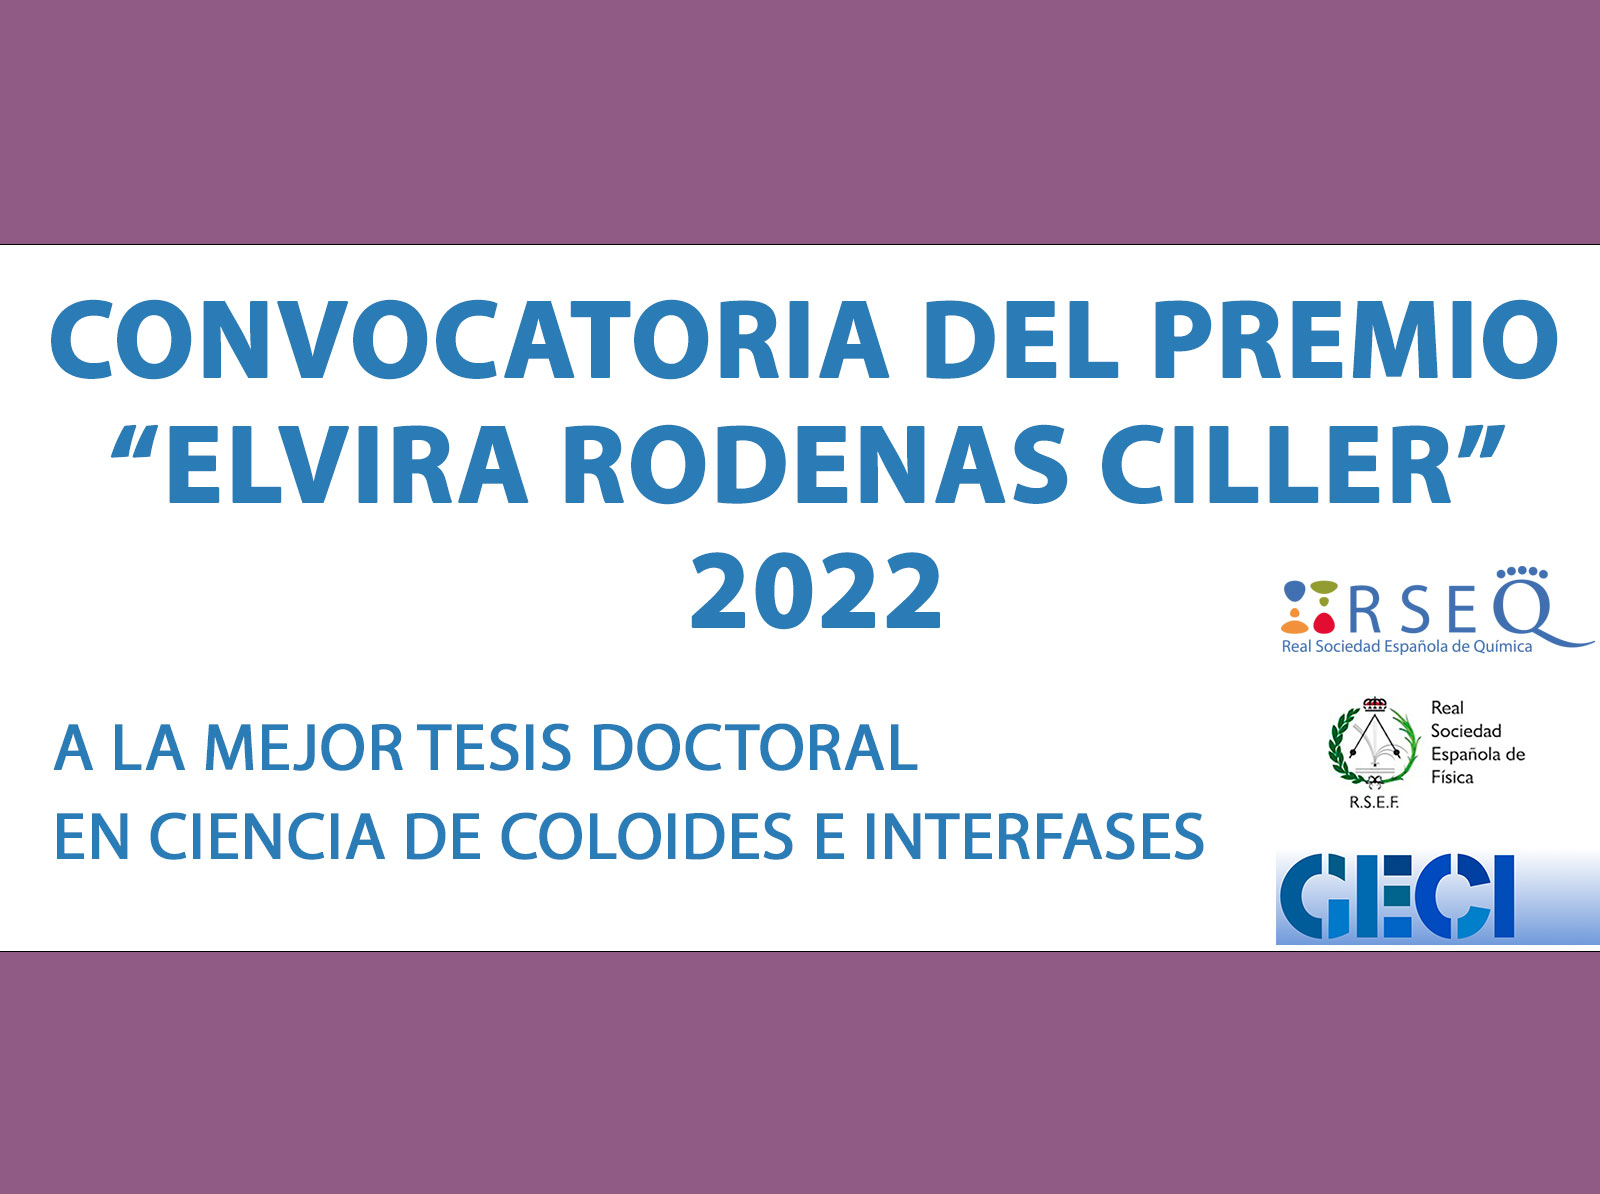 CONVOCATORIA DEL PREMIO “ELVIRA RODENAS CILLER” 2022